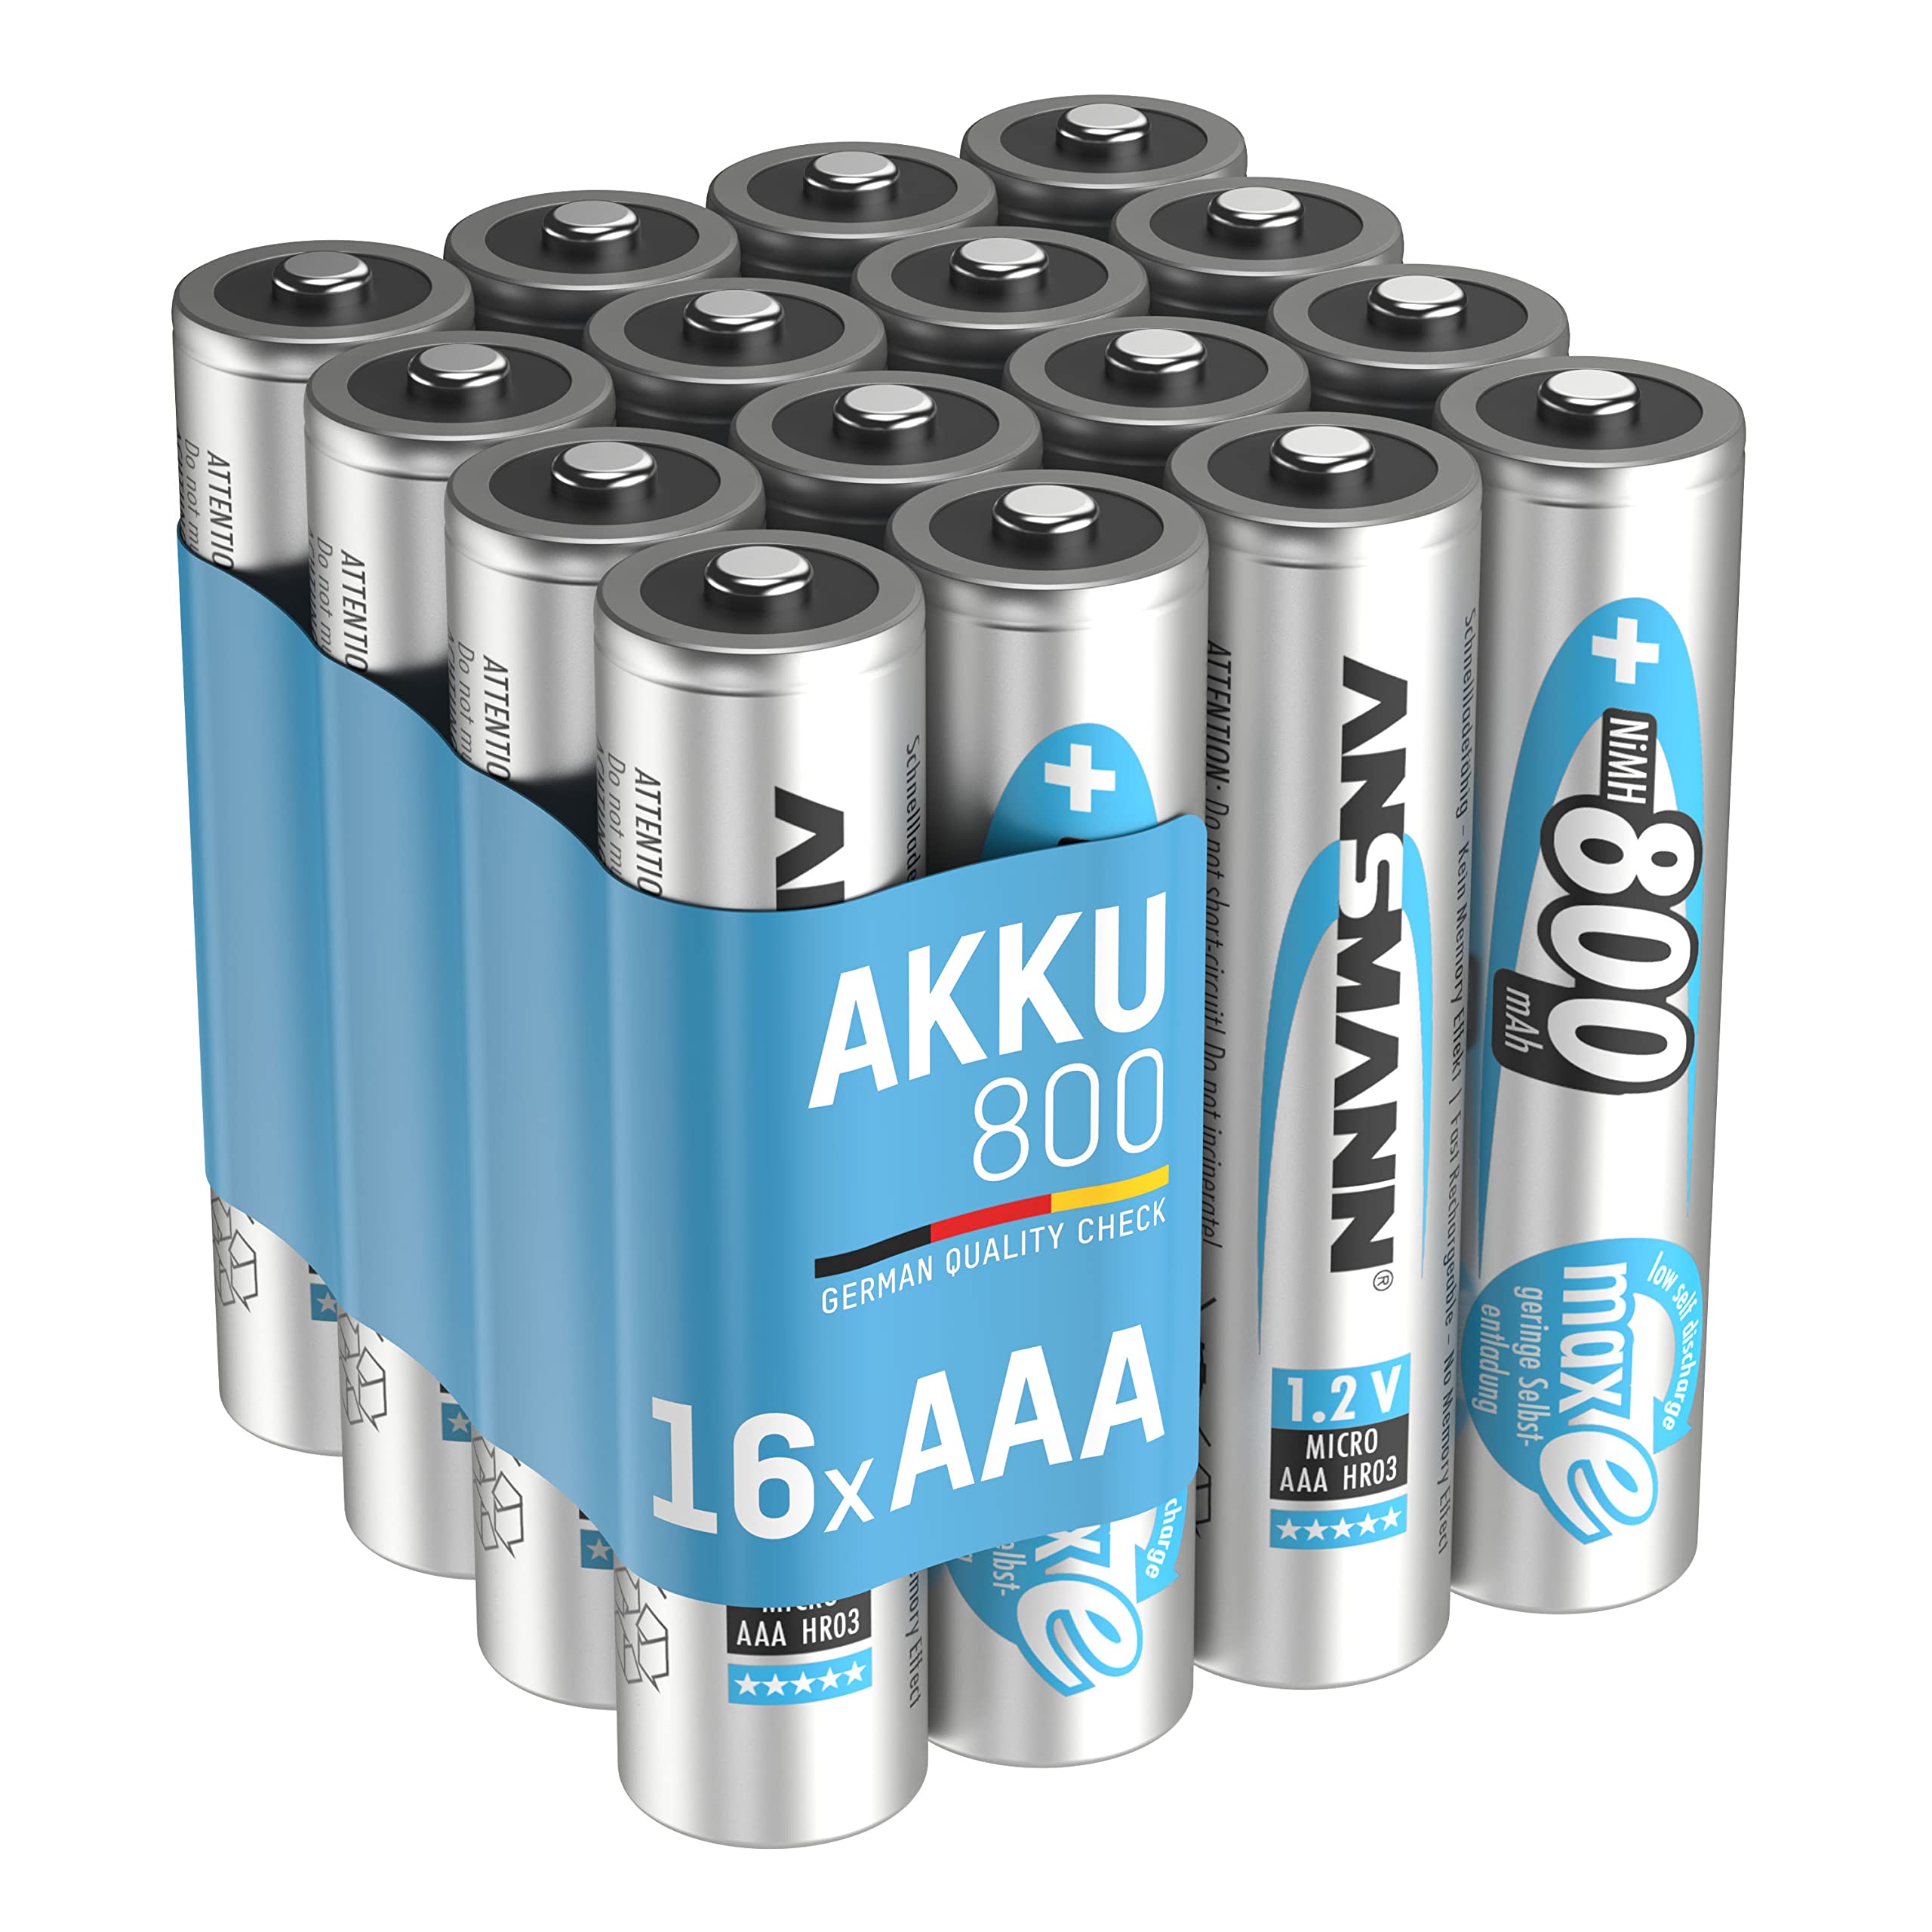 ANSMANN Akku AAA Micro 800mAh 1,2V NiMH 16 Stück für Geräte mit hohem Stromverbrauch - Wiederaufladbare Batterien maxE - Akkus für Spielzeug Taschenlampe Stirnlampe uvm - Rechargeable Batteries